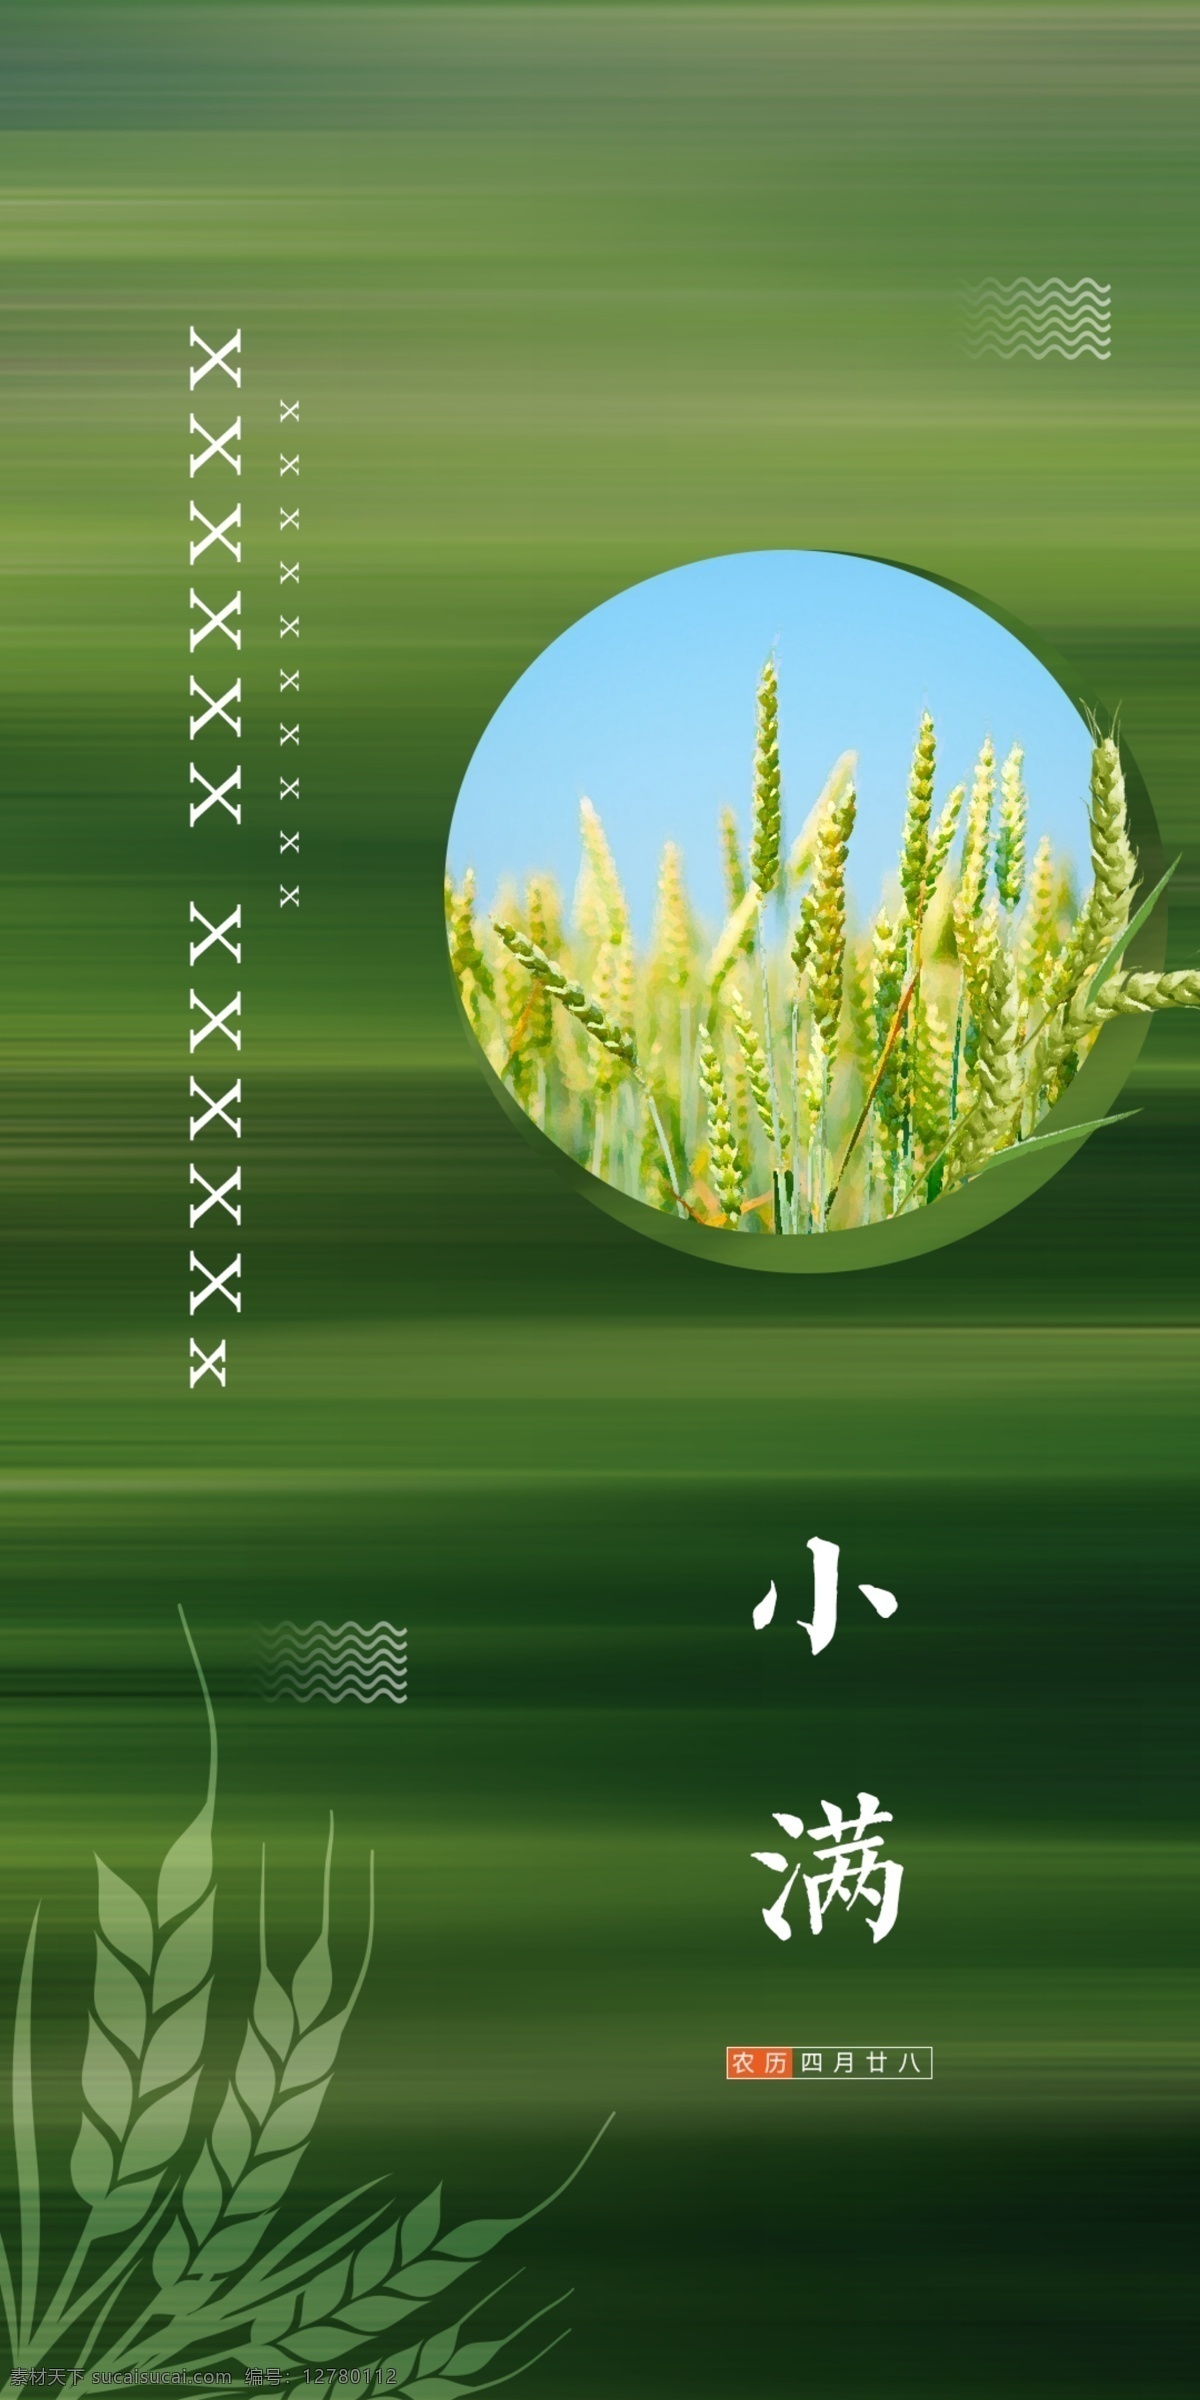 二十四节气 小满 地产 微 信 单 图 微信 单图 绿色 小麦 麦子 拉丝背景 飞机稿